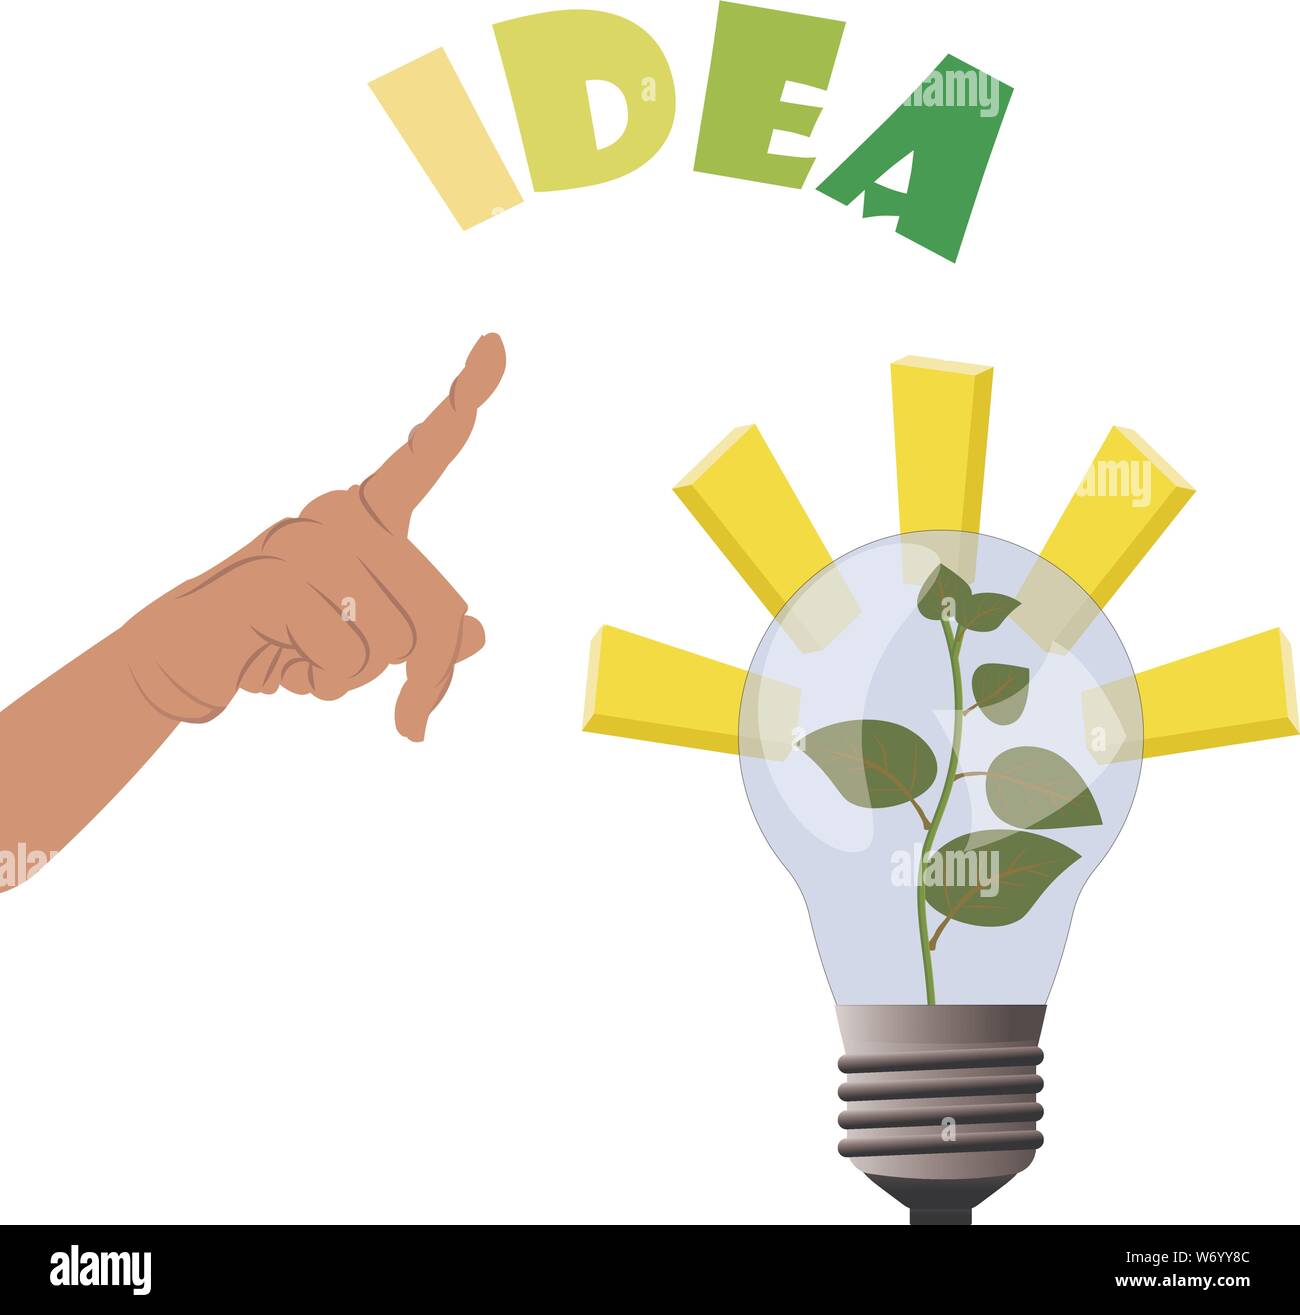 Zeigende Hand zu Pflanzen in der Lampe wachsen - Licht und Inspirationen für Geschäftsidee, Geld zu verdienen und wächst nach oben. Vector Illustration für Busin Stock Vektor